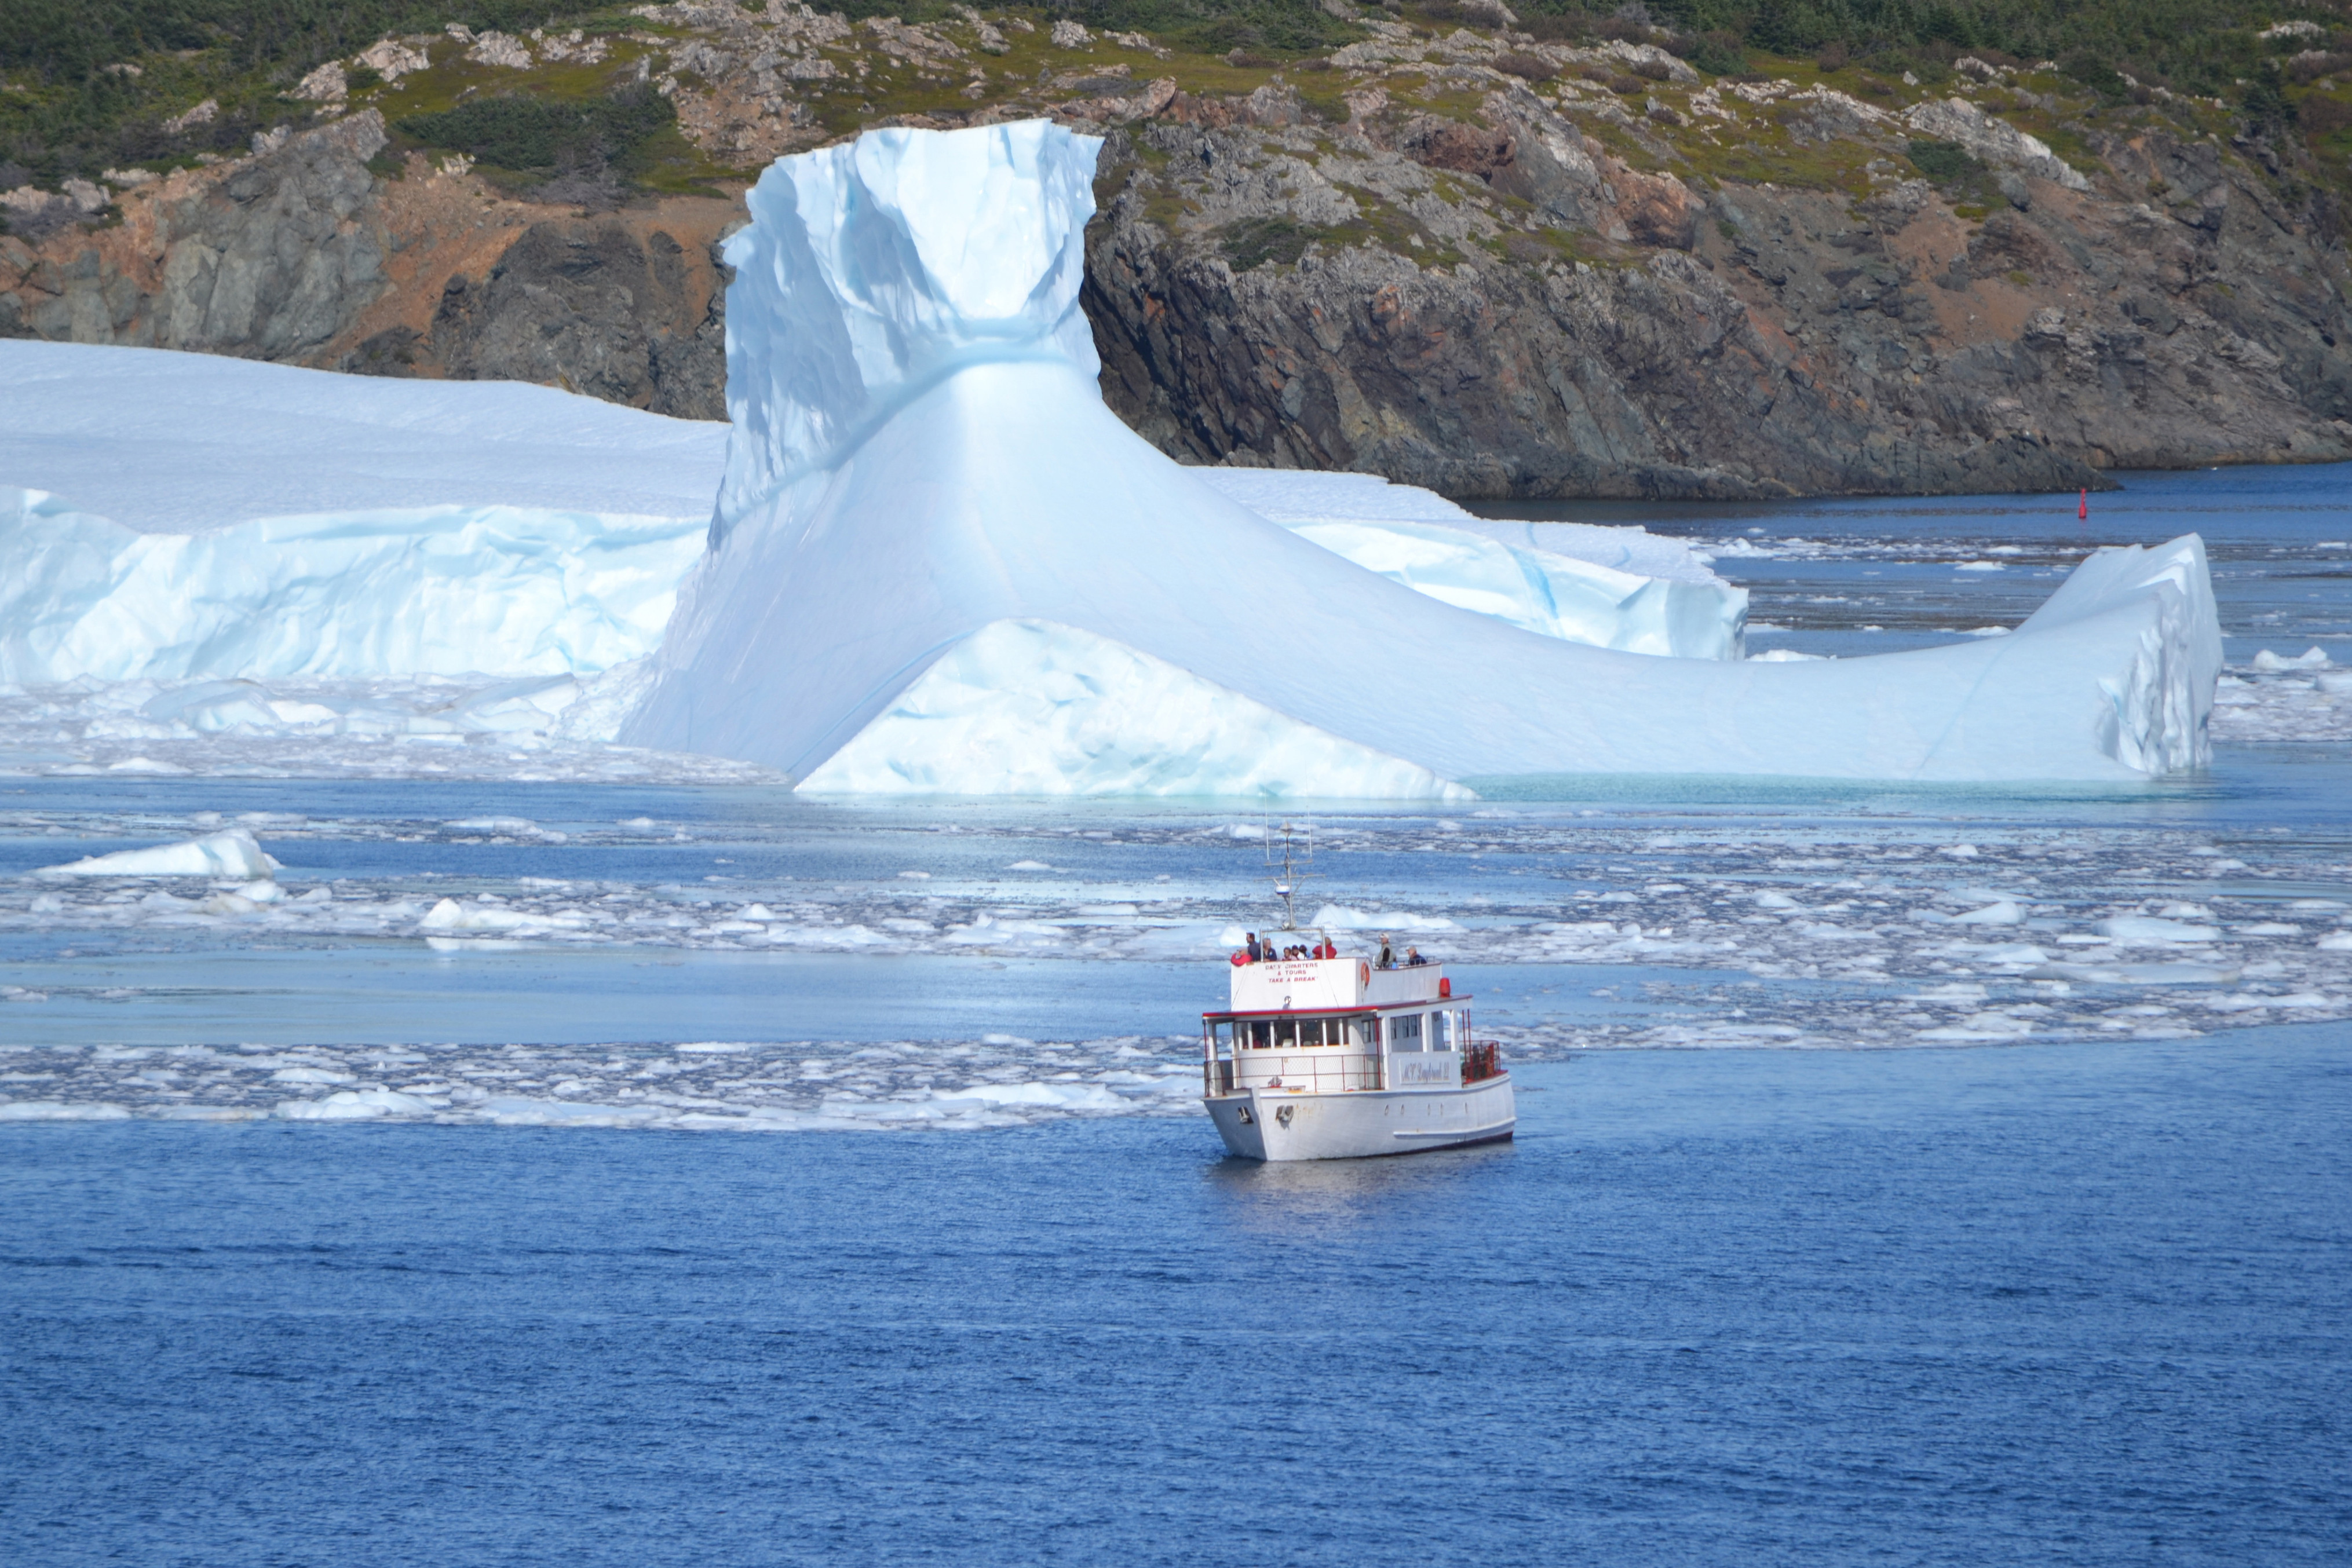 Ice floes à go-go on Canada's Fogo Island